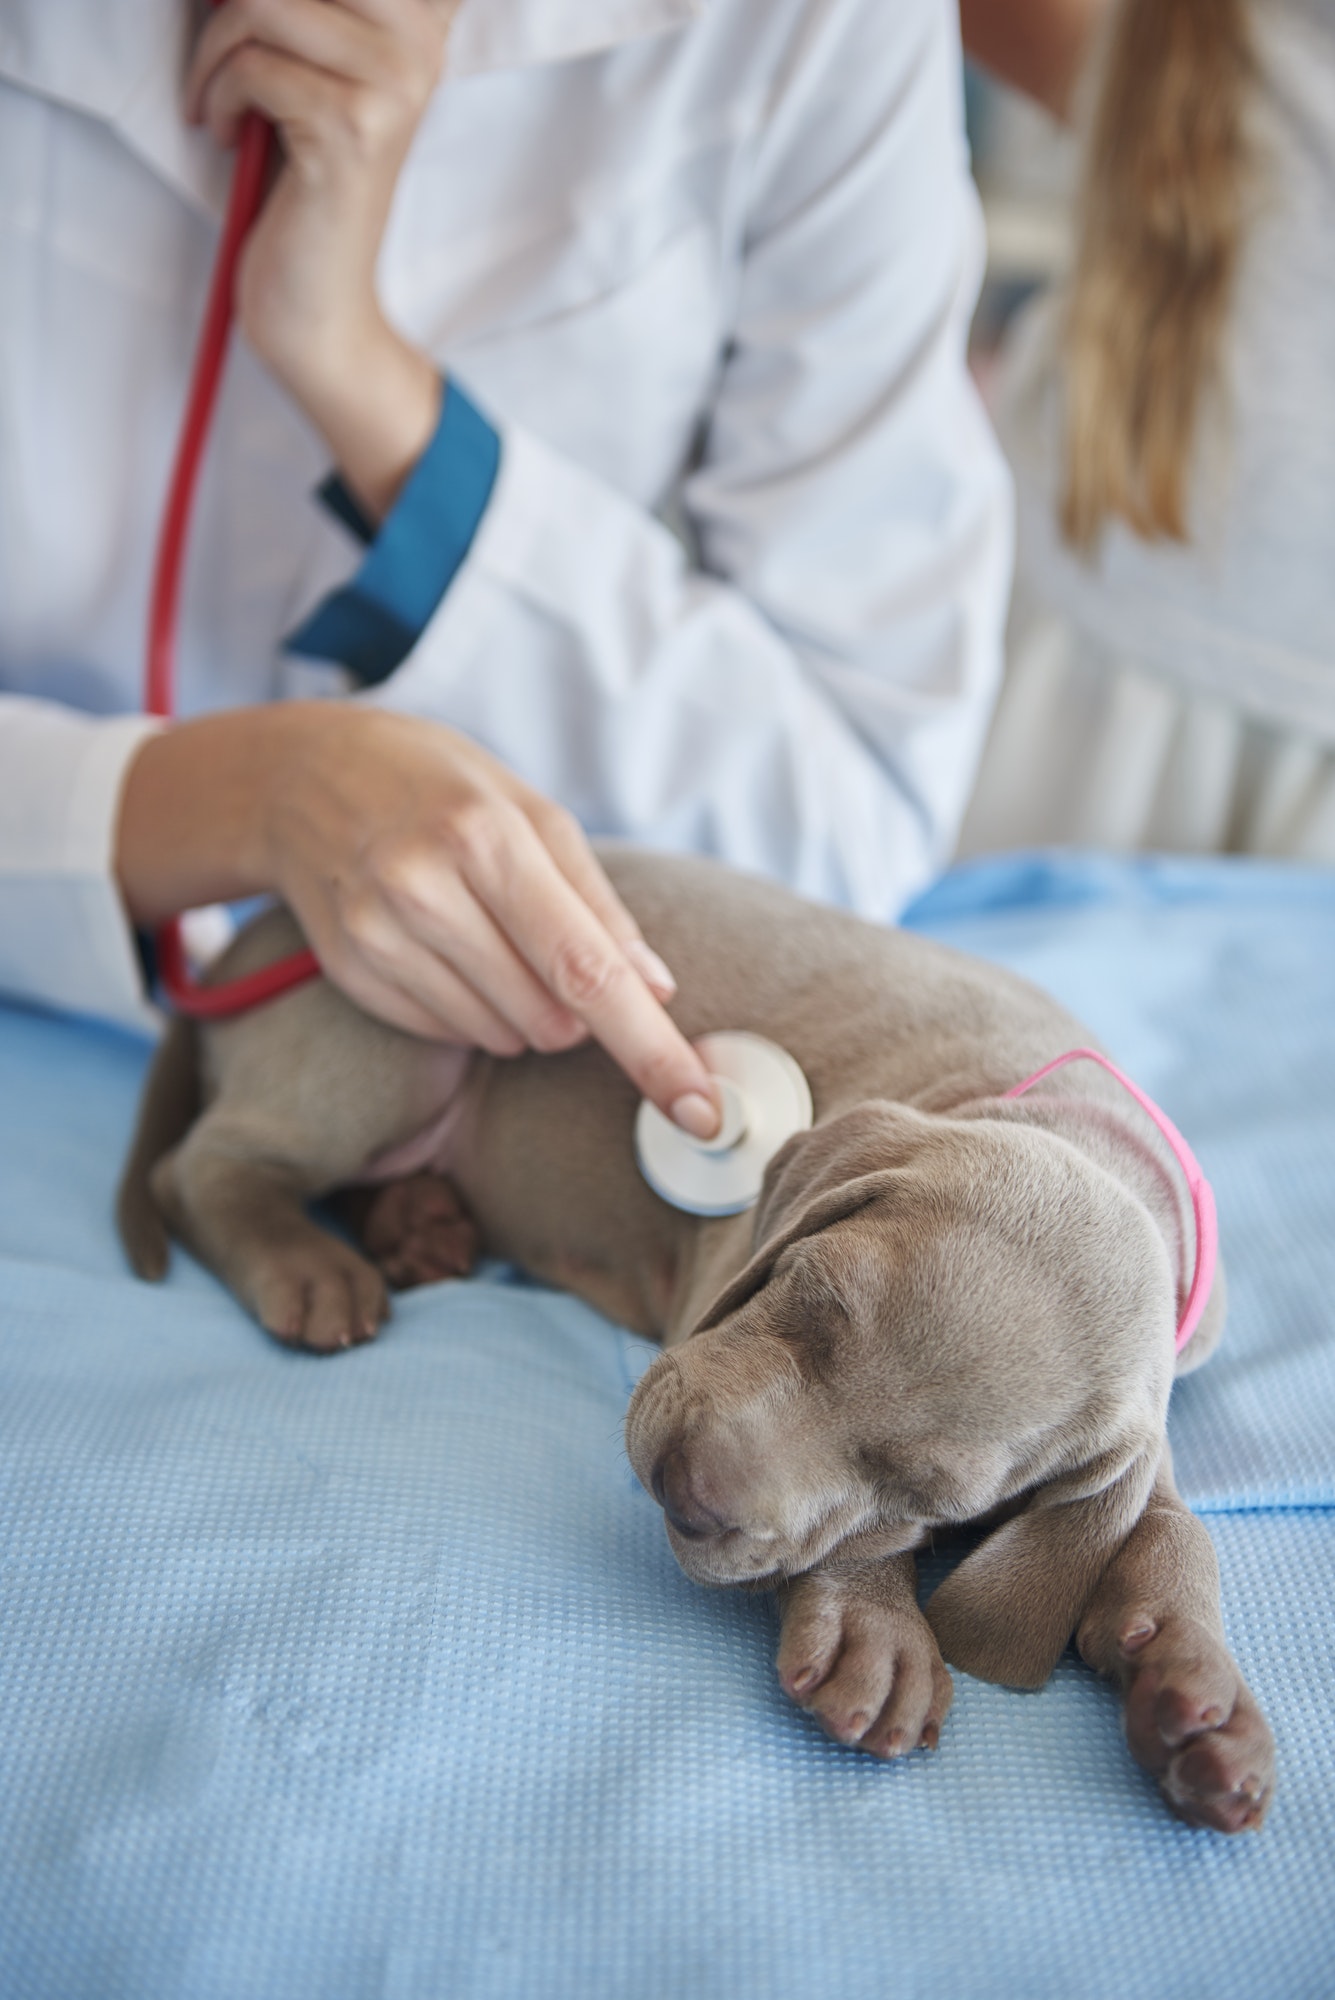 Sleeping dog examined by the vet